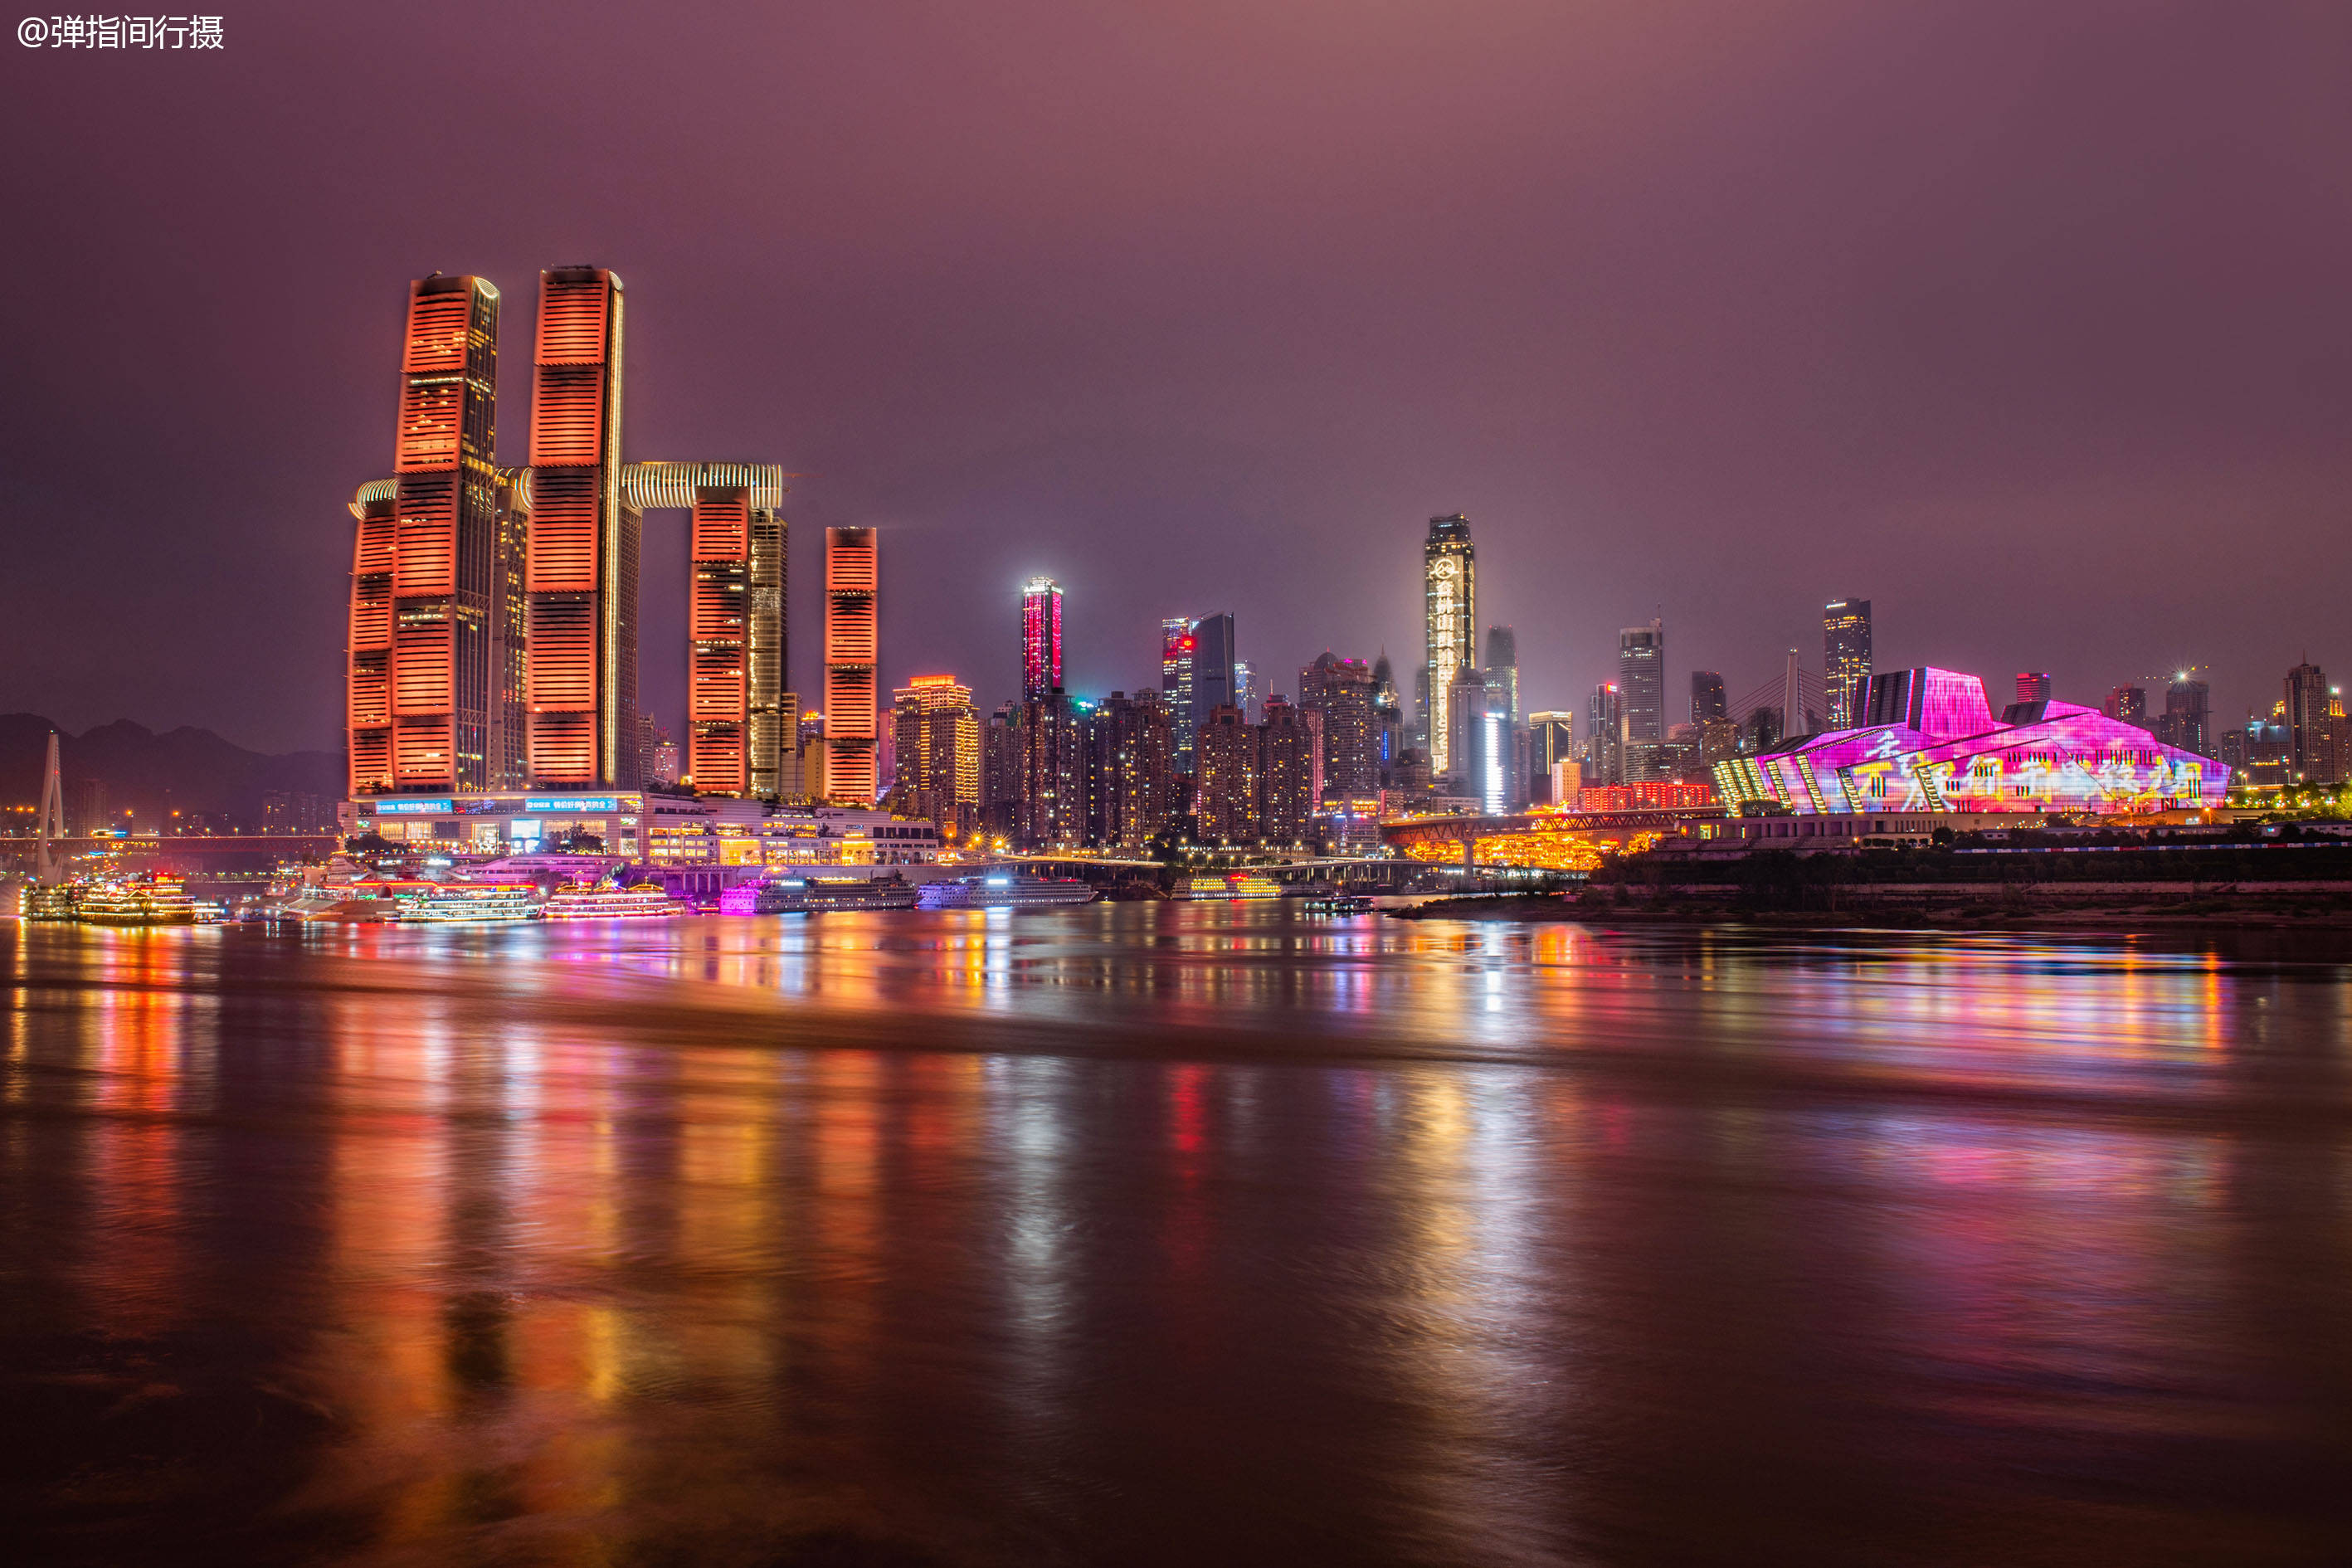 山城重庆因绝美夜景爆红网络是中国西部城市的颜值担当